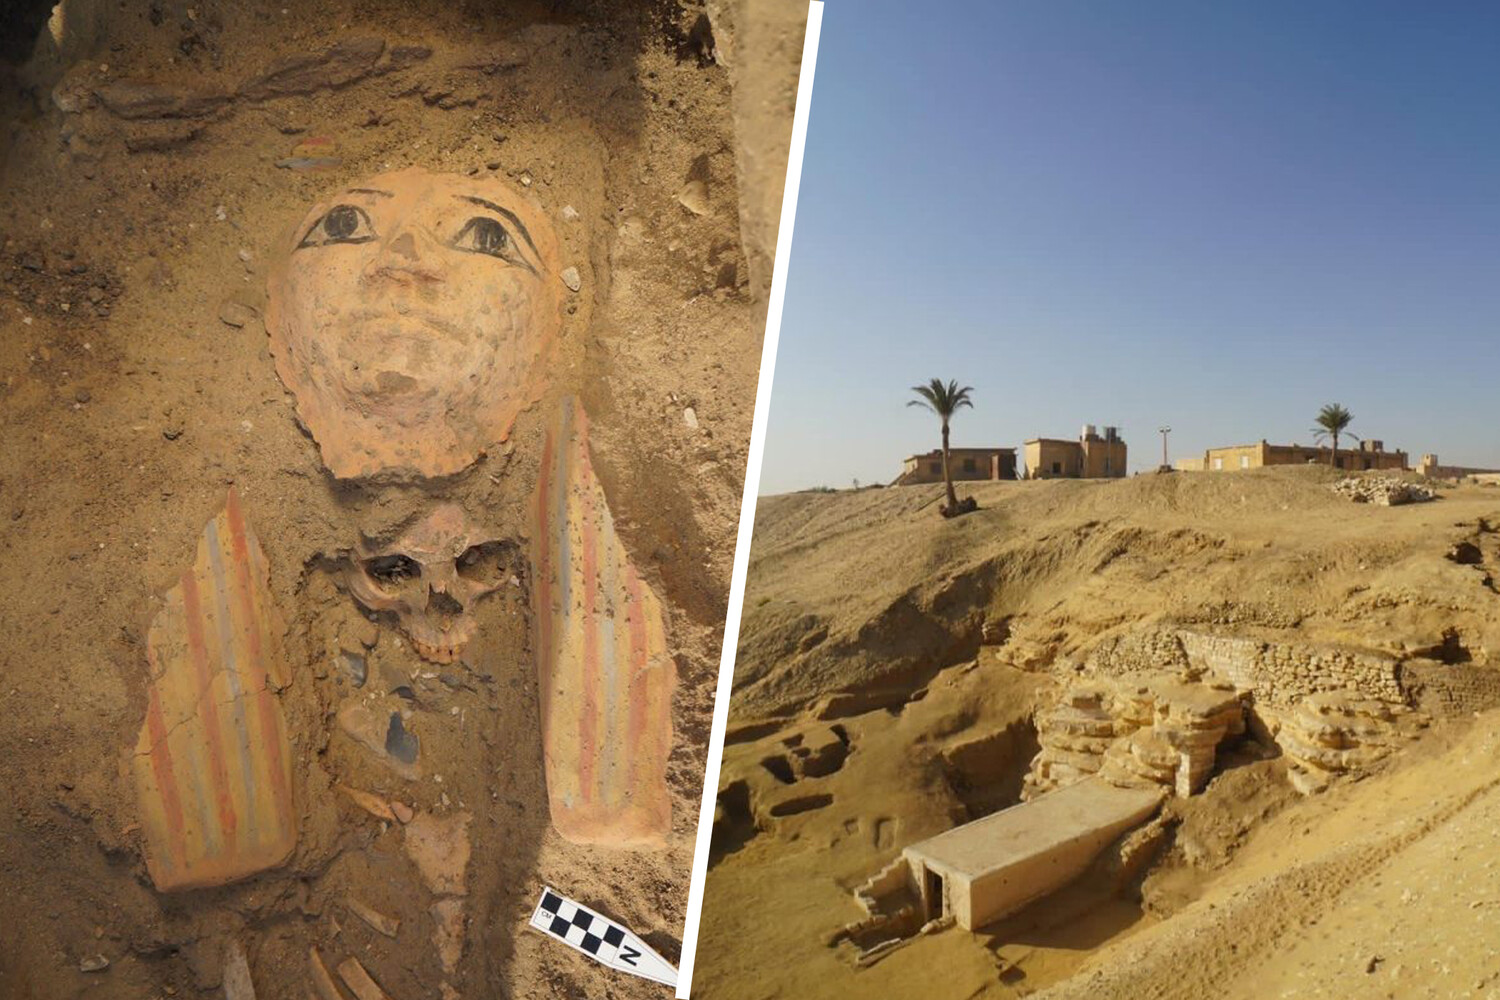 v egipetskoy skale nashli unikalnuyu drevnyuyu grobnitsu